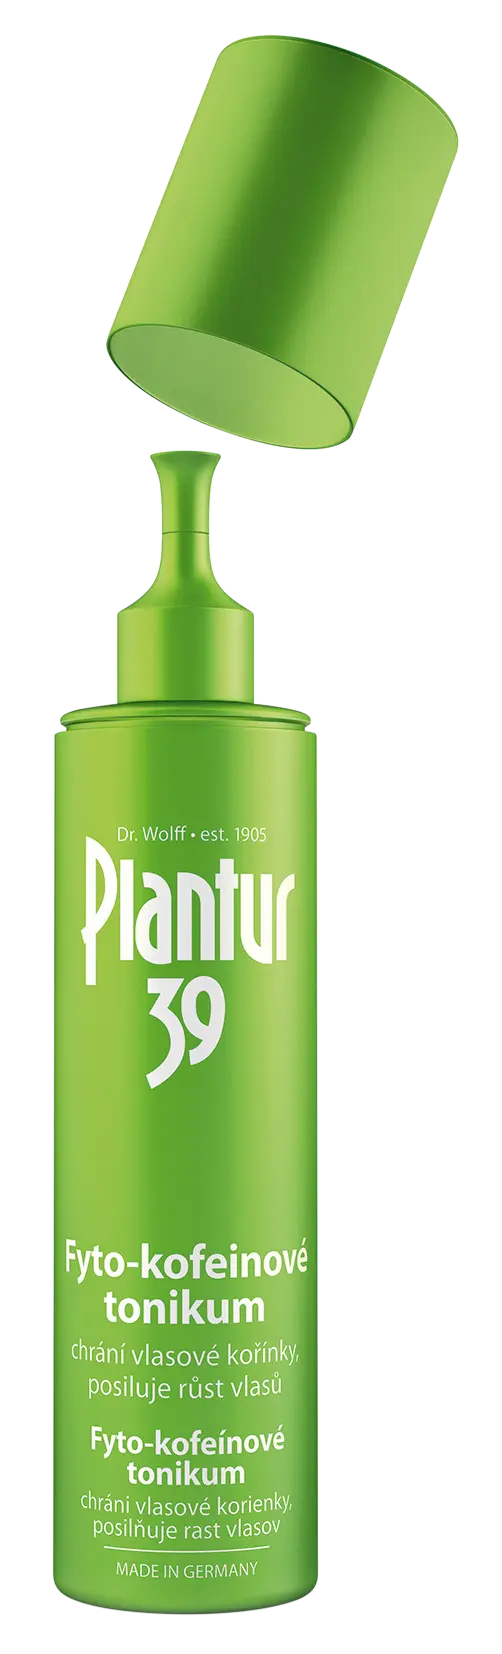 Plantur 39 Fyto-kofeinové tonikum 200 ml